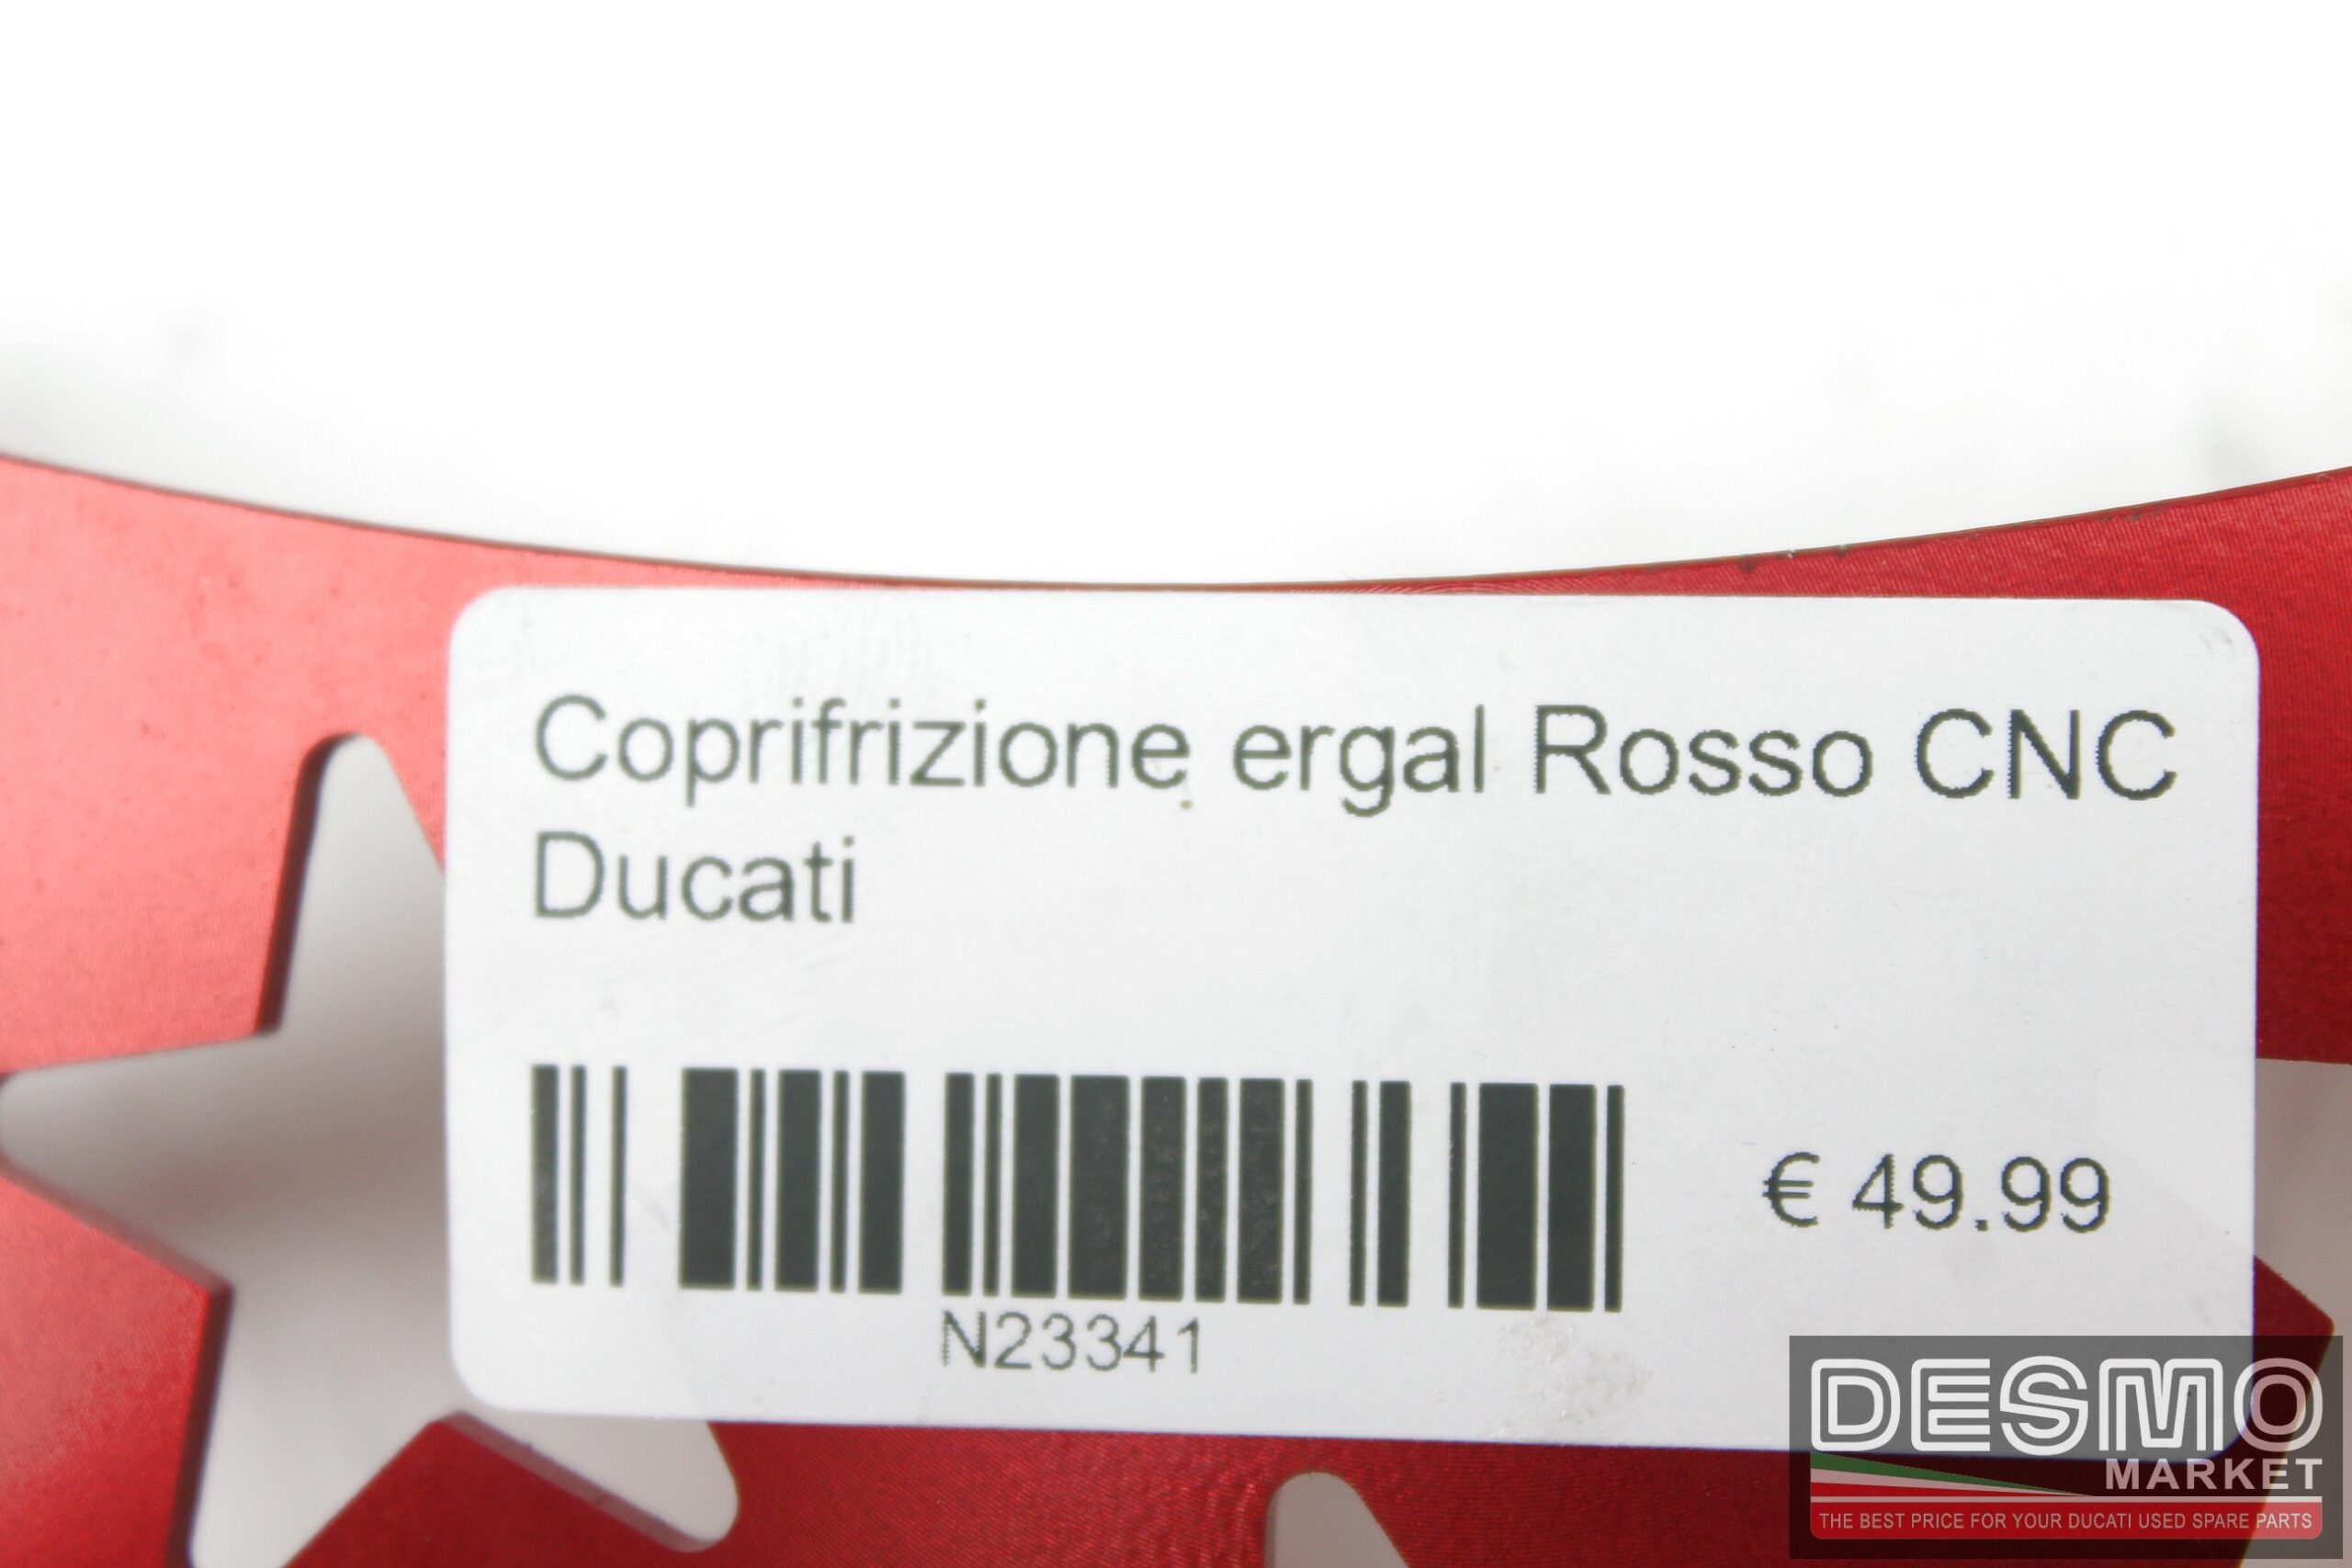 Coprifrizione ergal Rosso CNC Ducati